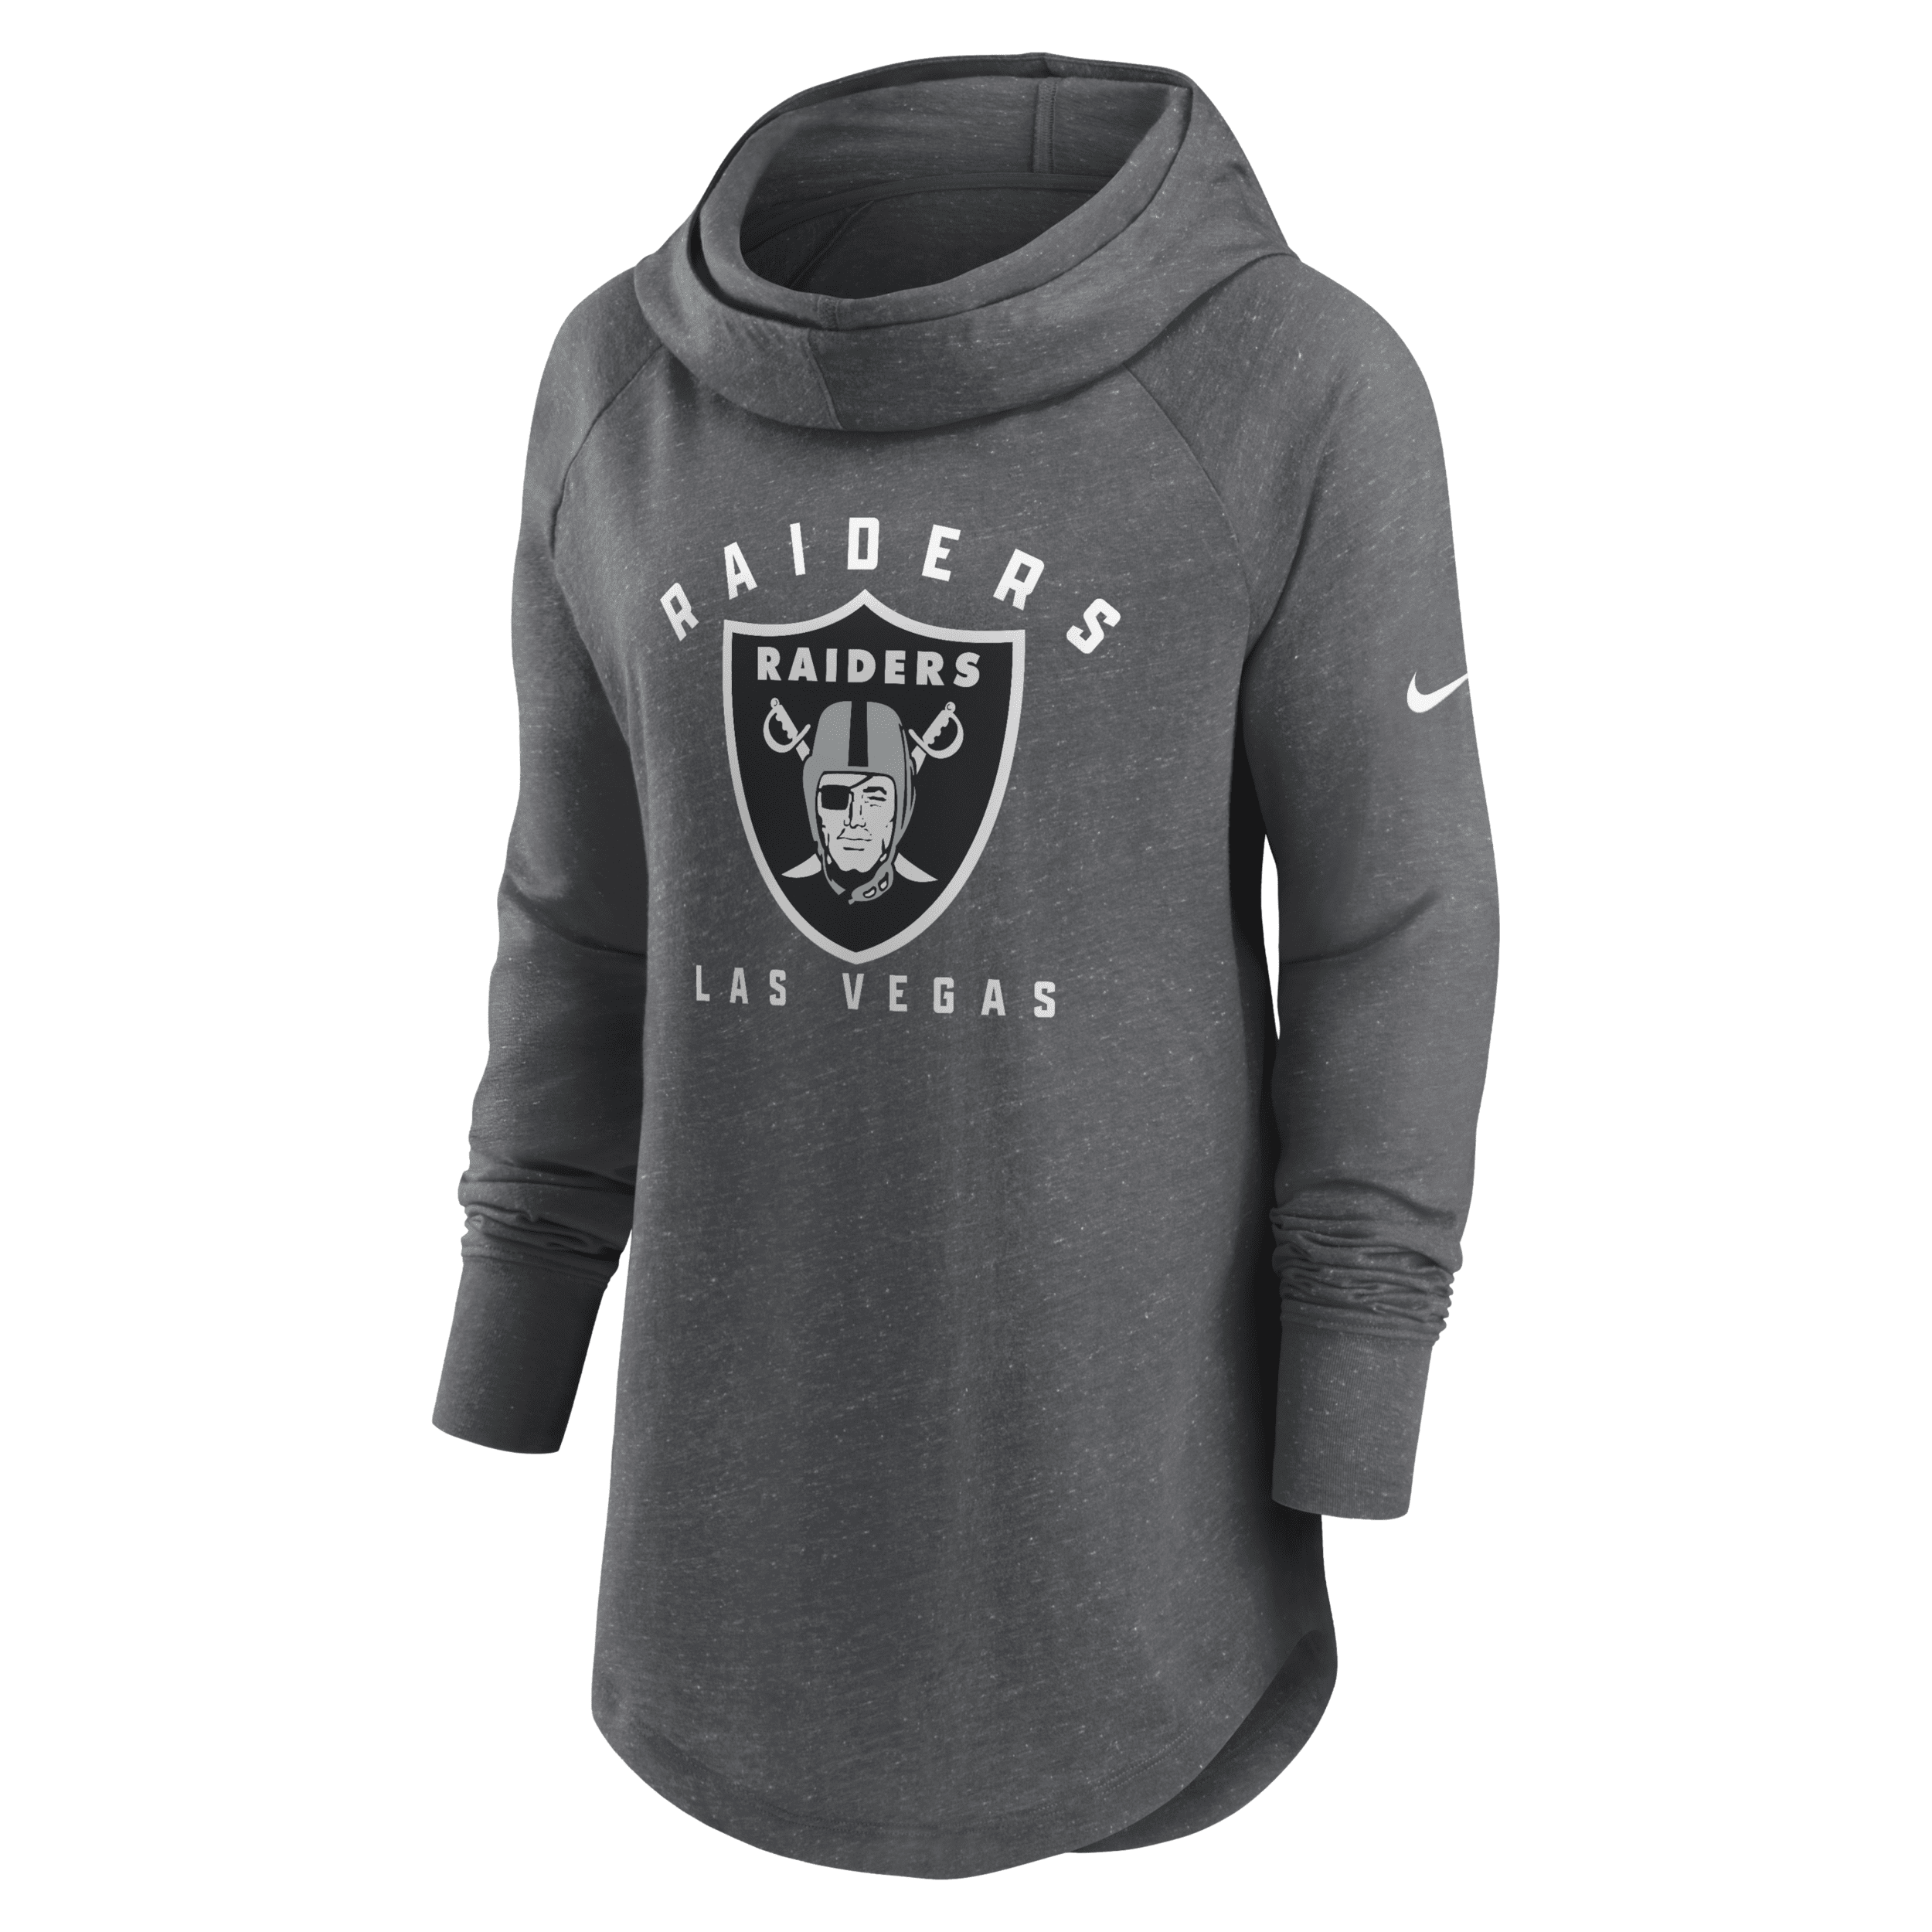 Nike Women's Team (nfl Las Vegas Raiders) Pullover Hoodie In Grey